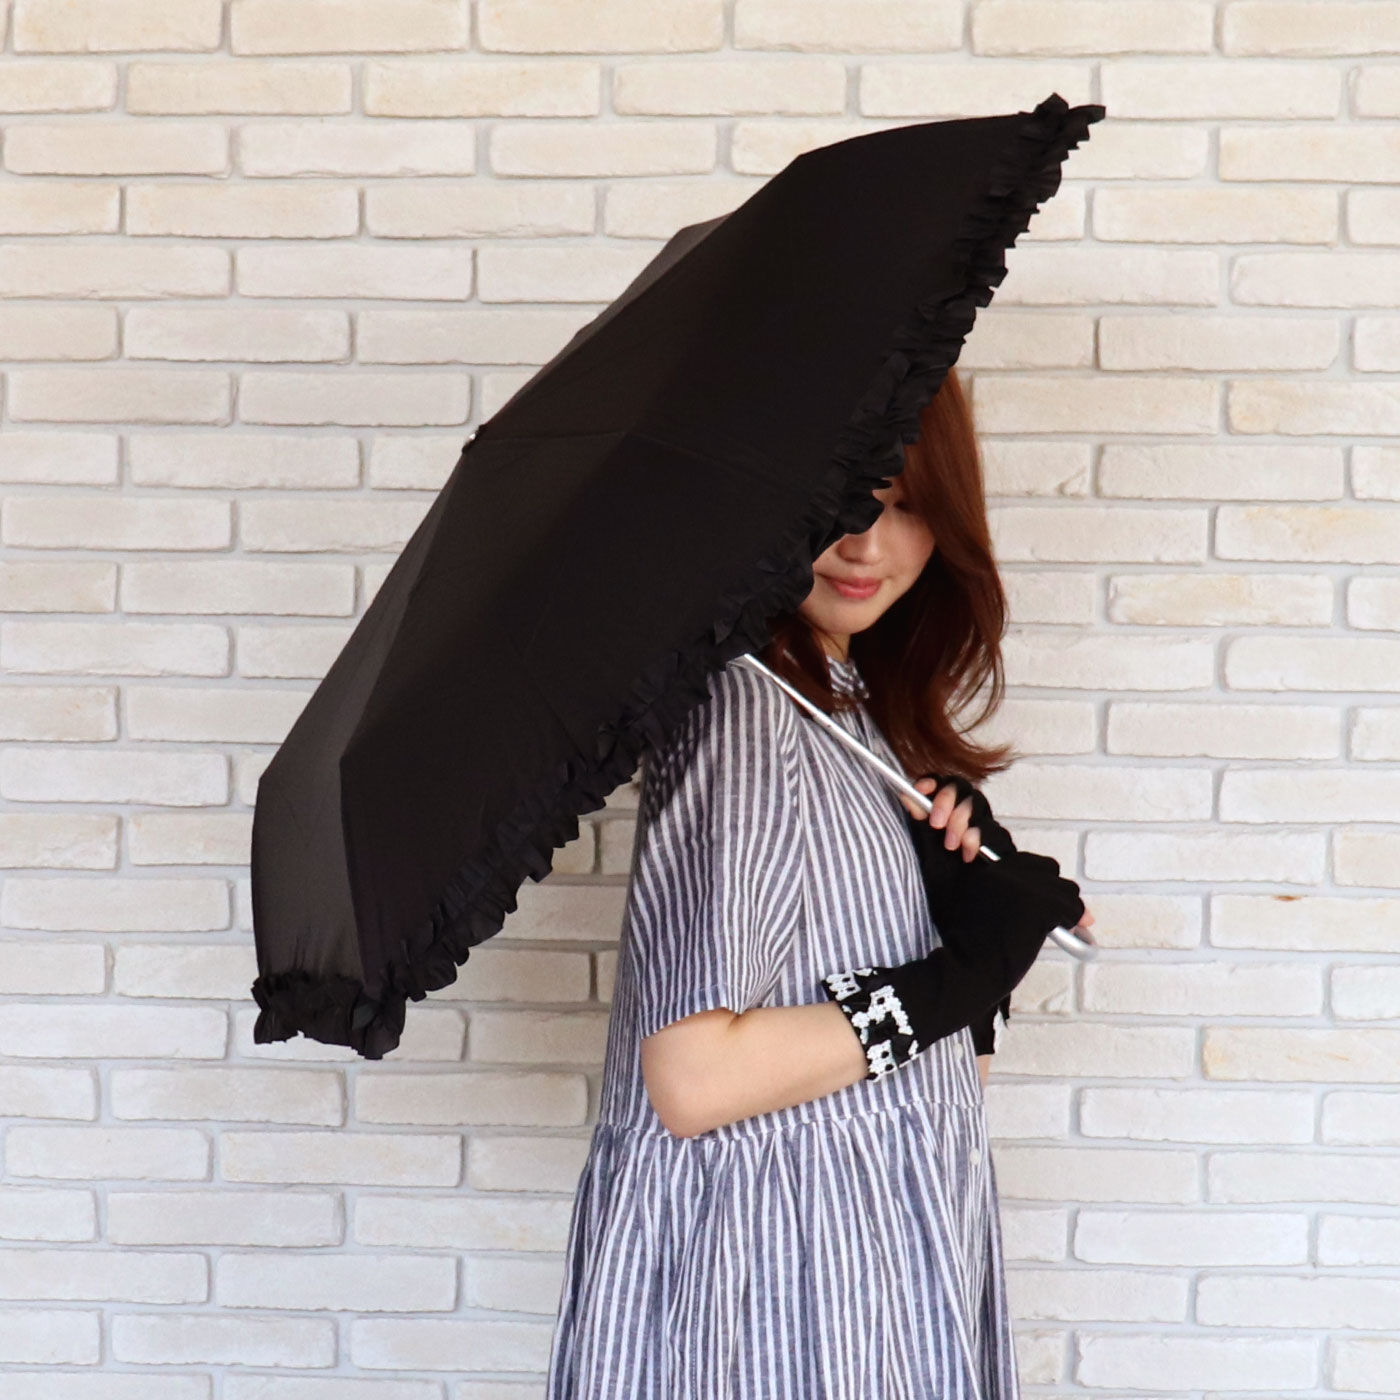 FELISSIMO PARTNERS|LA LUICE　たたむのも広げるのもうれしいフリル折りたたみ傘